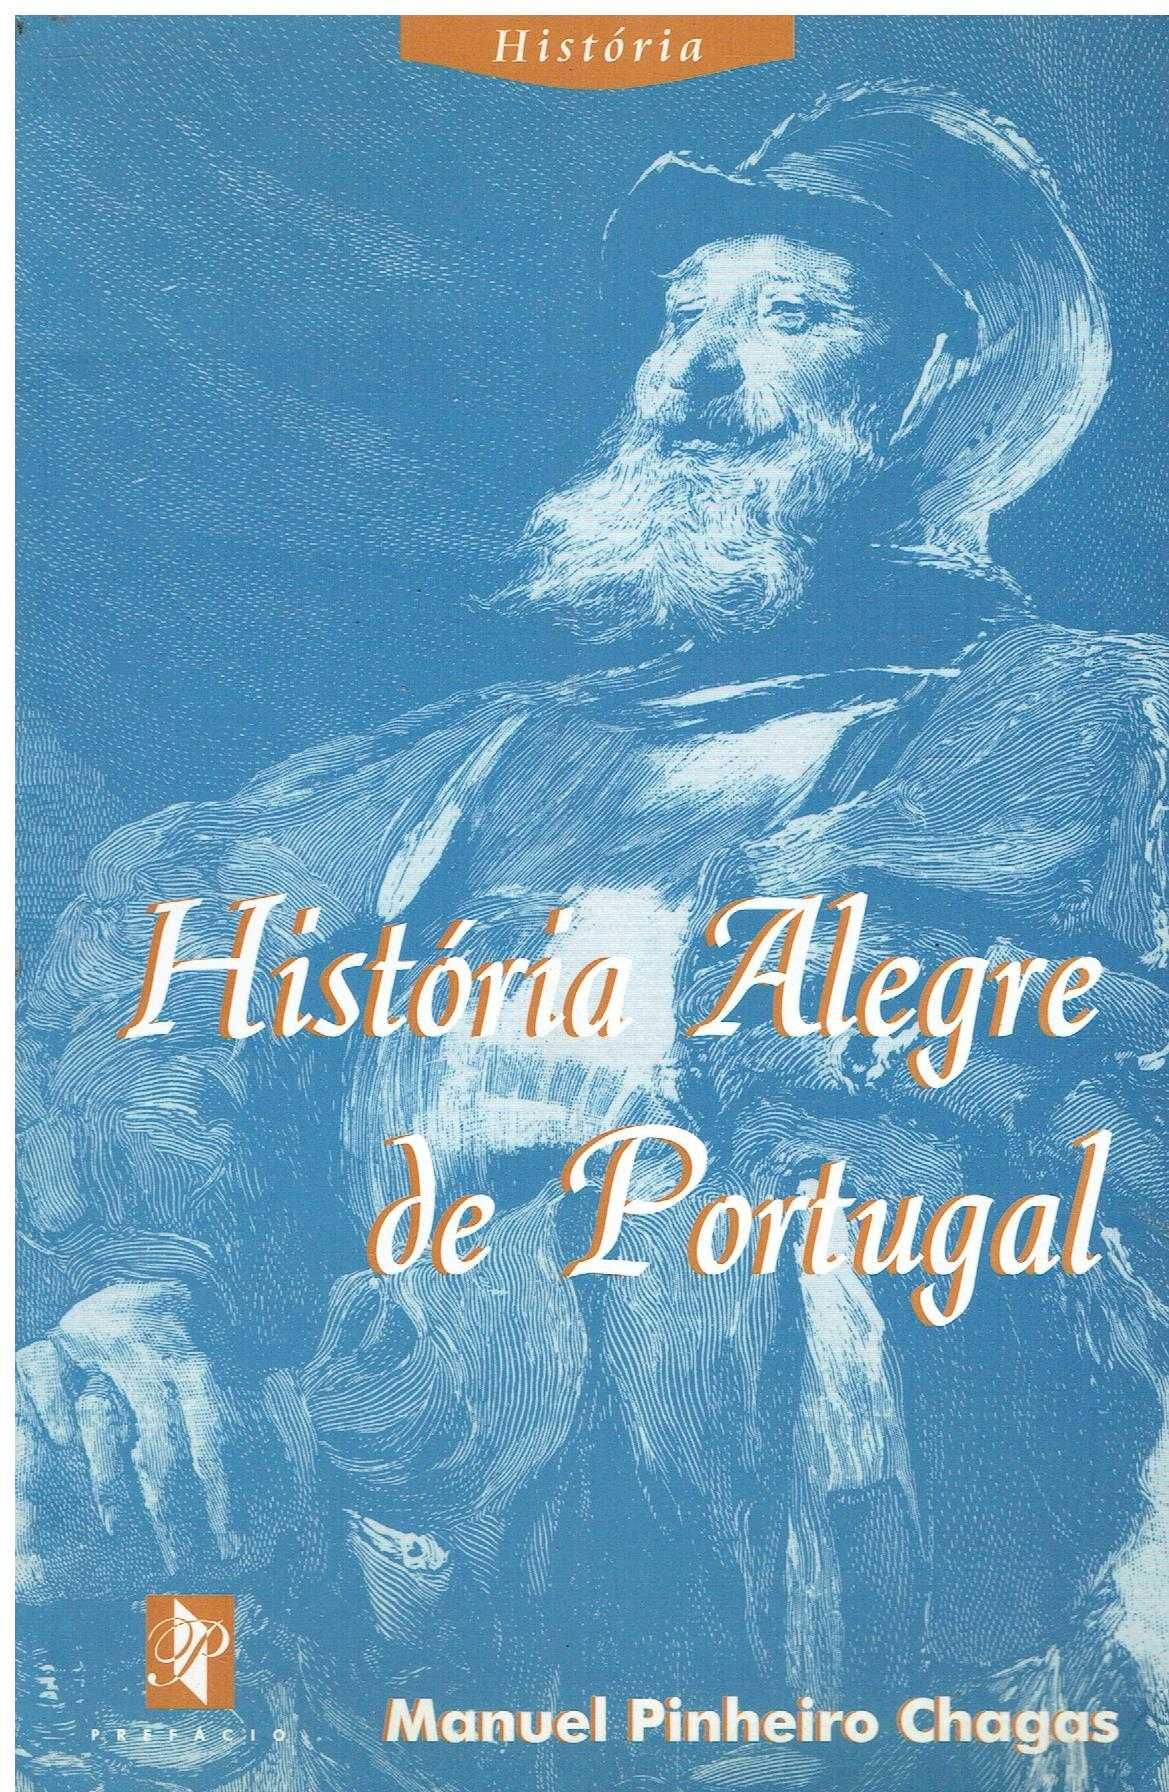 3356

História Alegre de Portugal
de Manuel Pinheiro Chagas